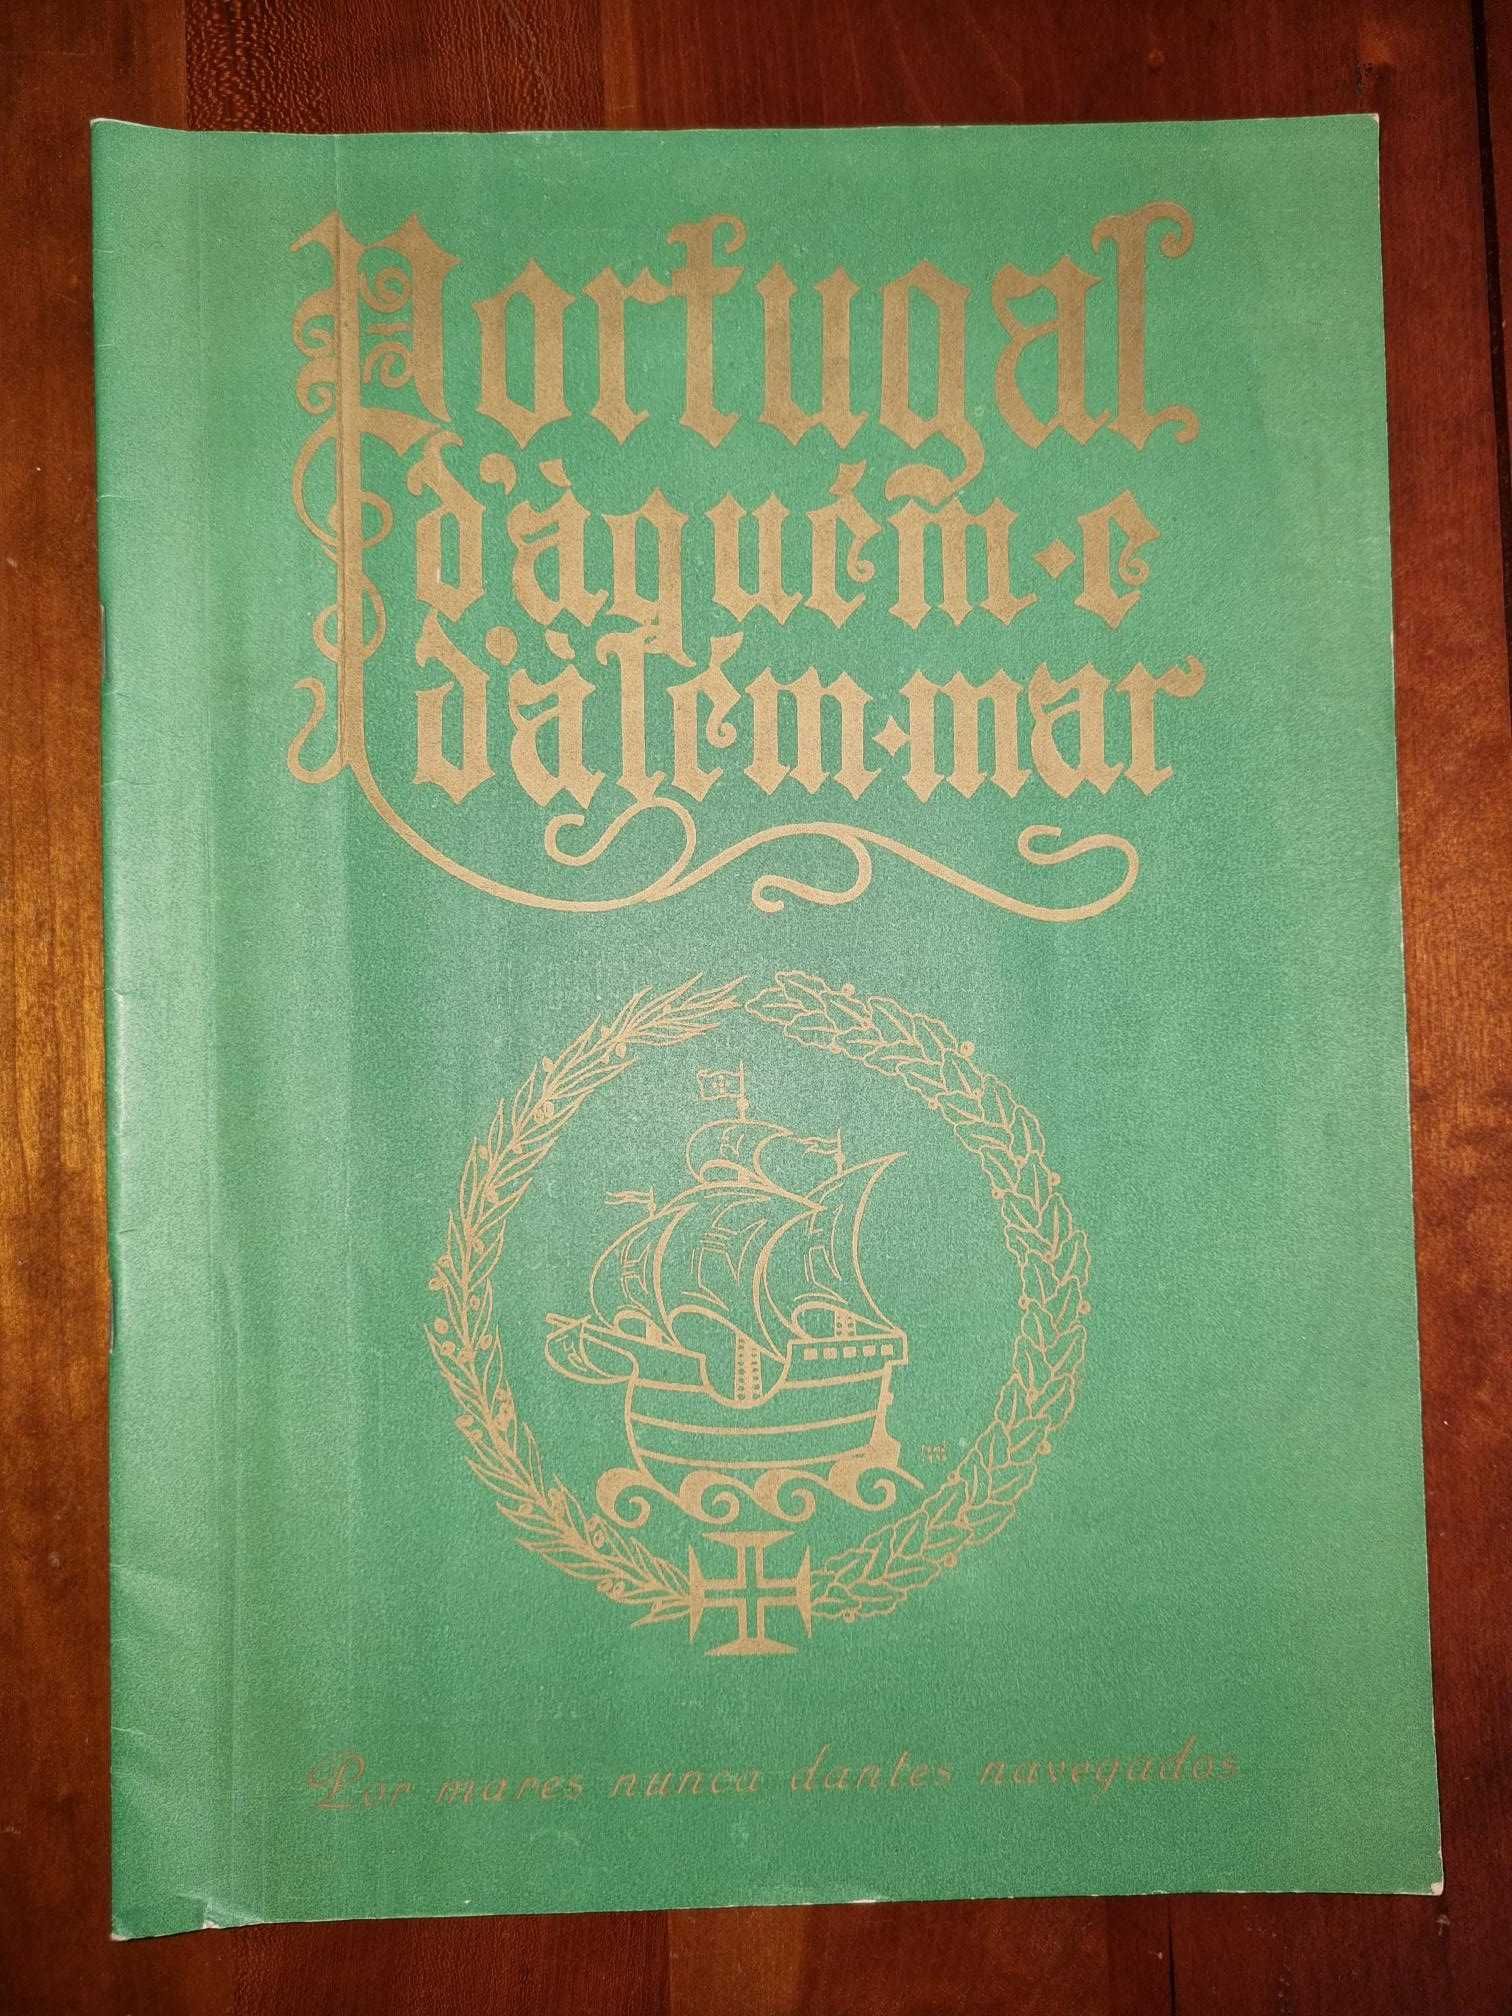 Portugal d'aquém e d'além mar - revista ilustrada de 1947